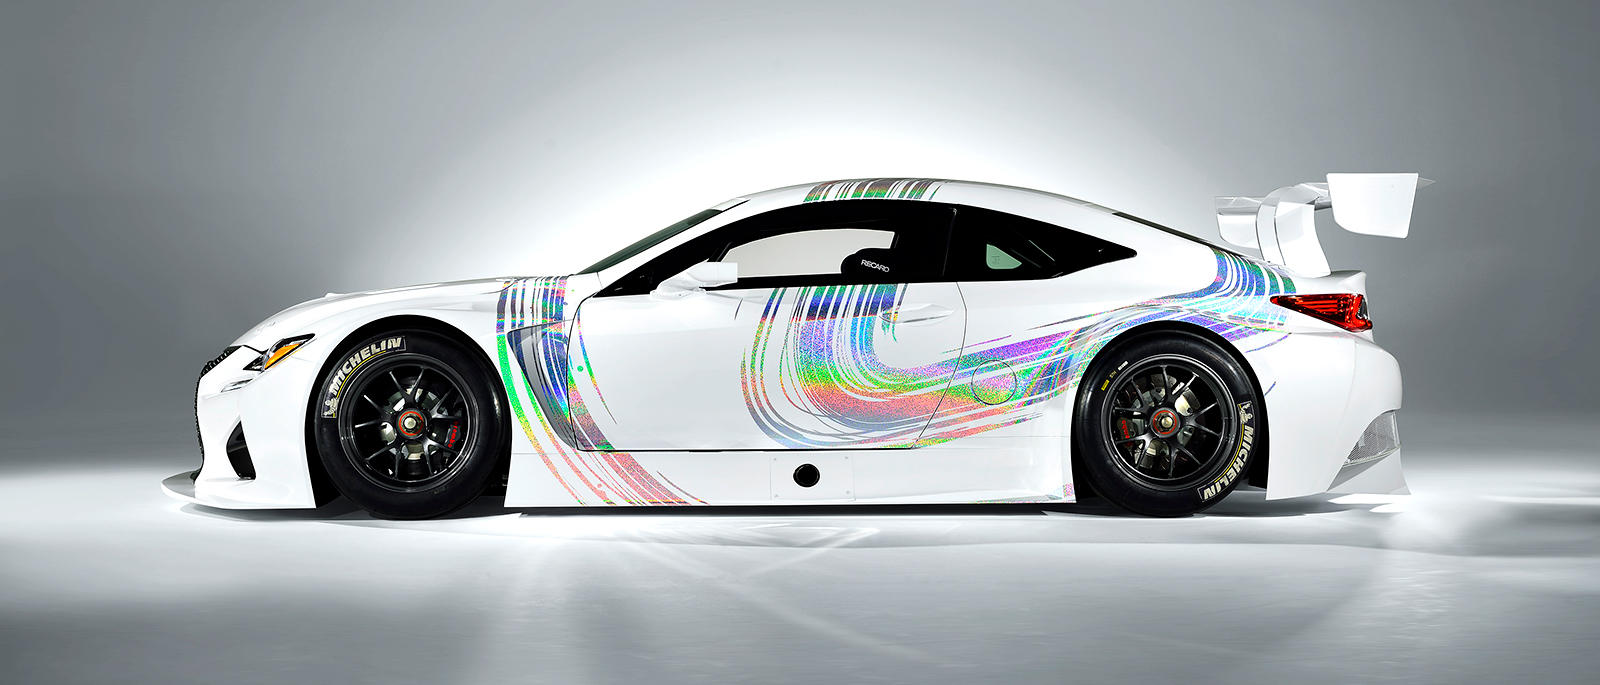 2014年にジュネーブモーターショーで公開された「RC F GT3 concept」